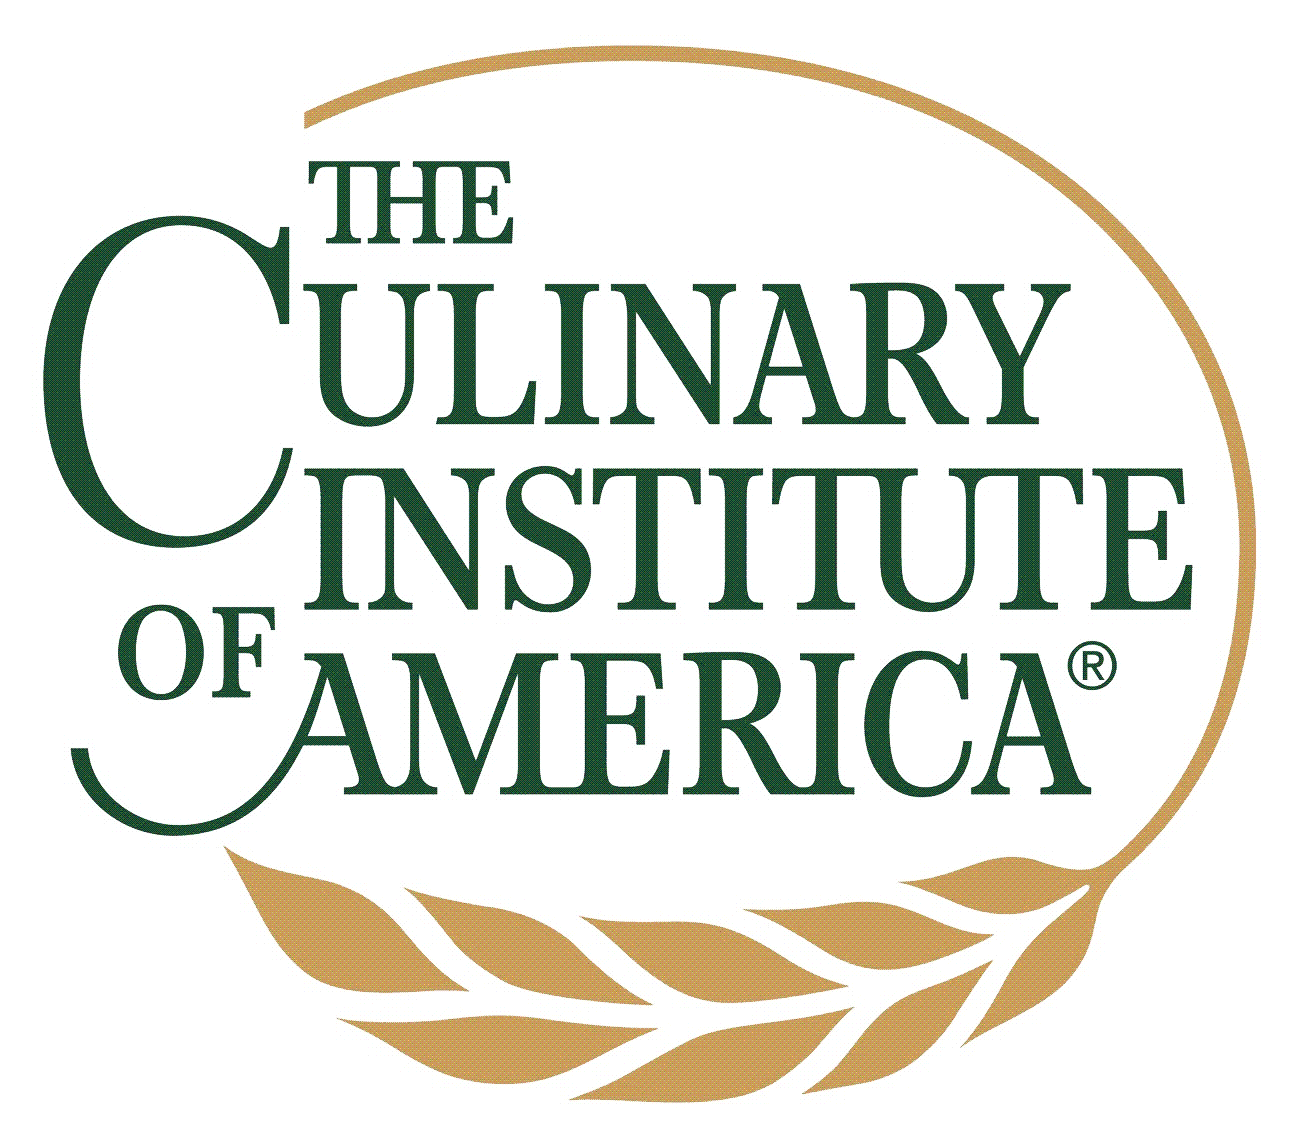 Image: culinary_institute_america_logo